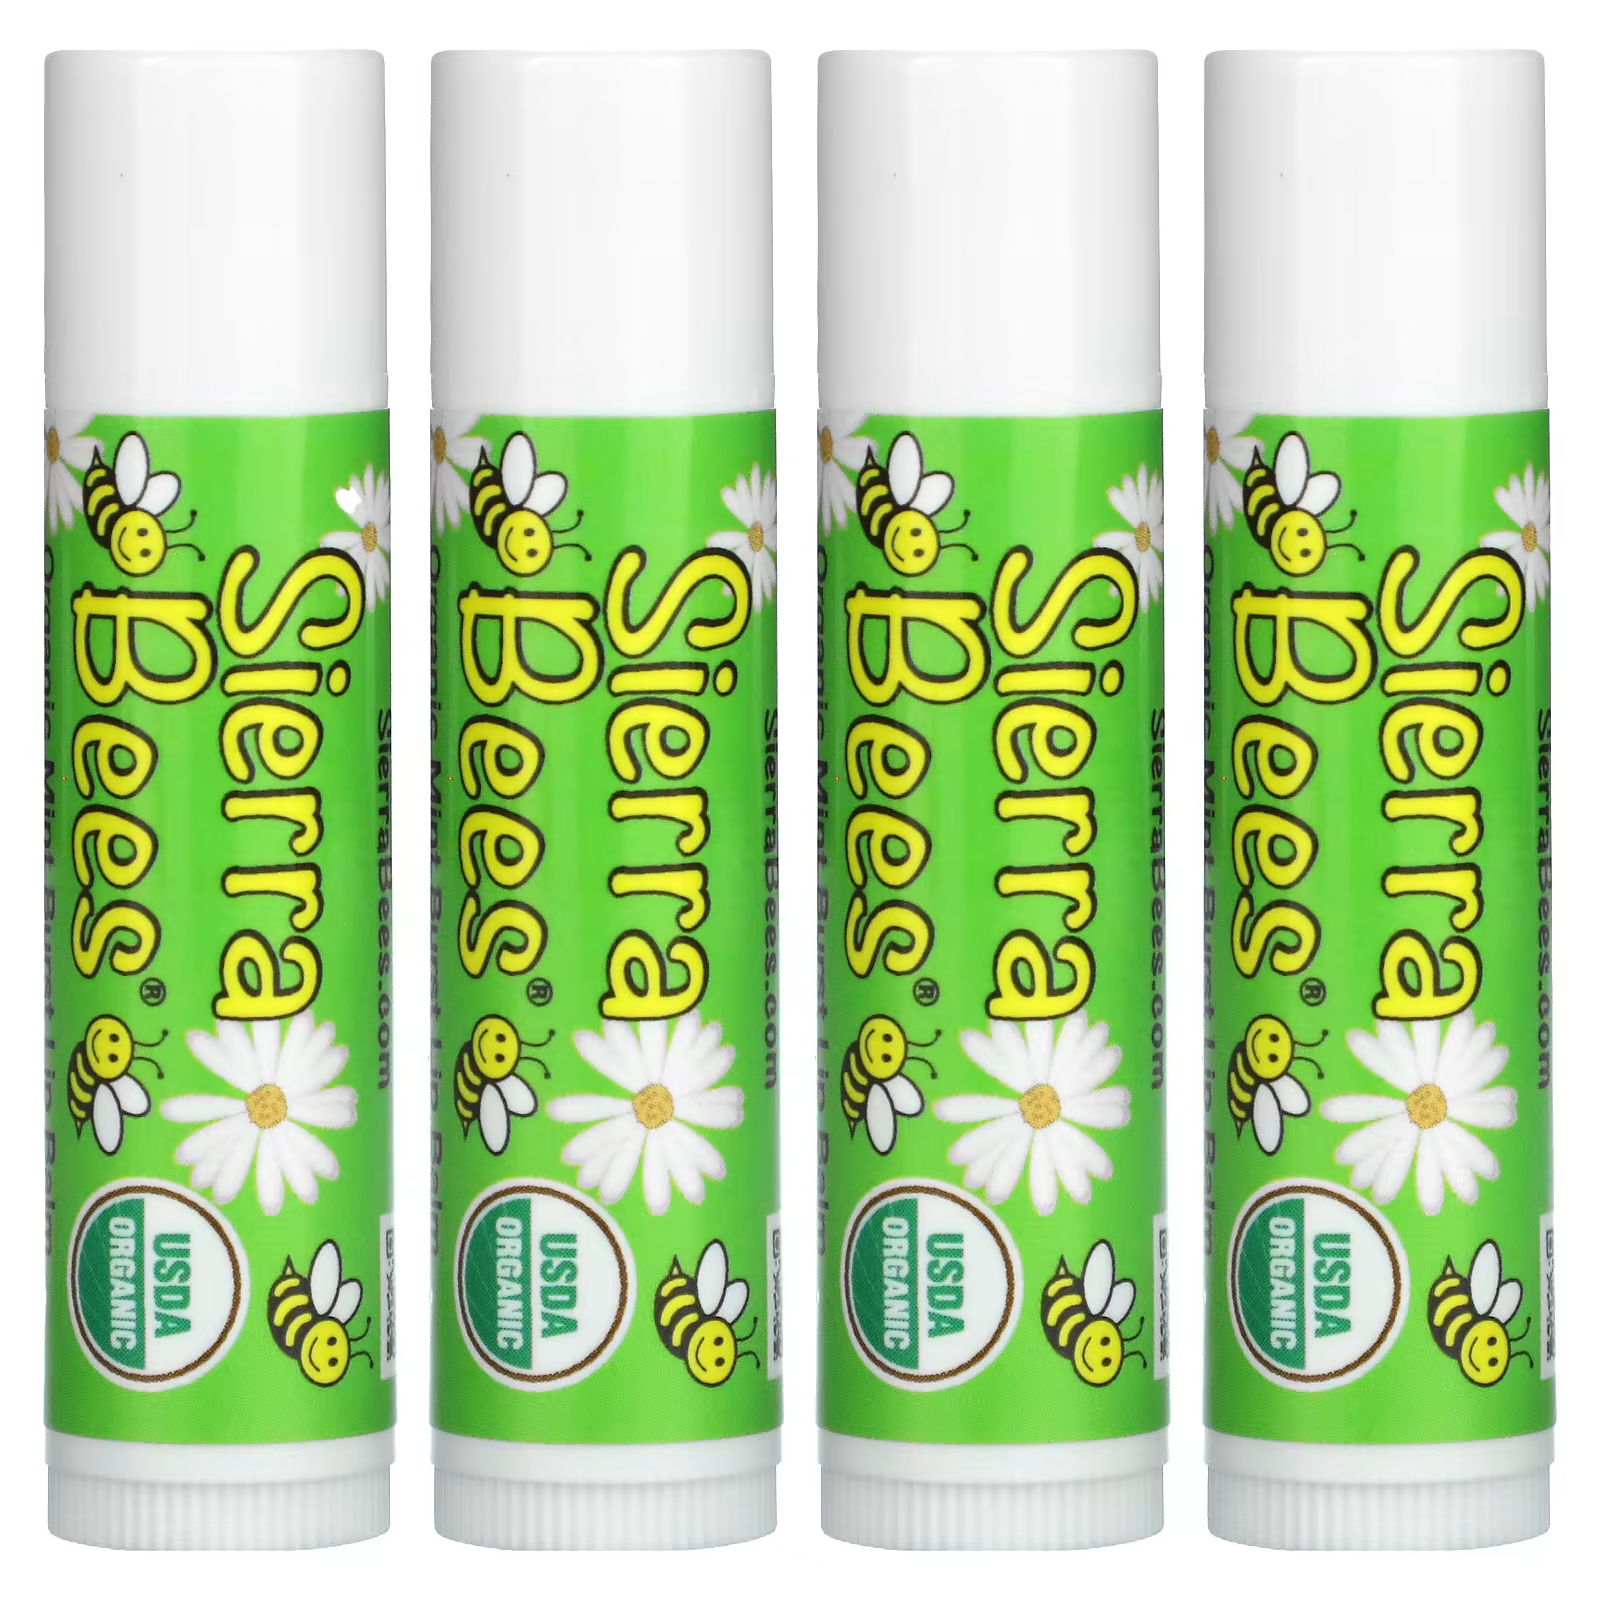 Органические бальзамы для губ Sierra Bees Mint Burst, 4 упаковки по 0,15 унции (4,25 г) каждый